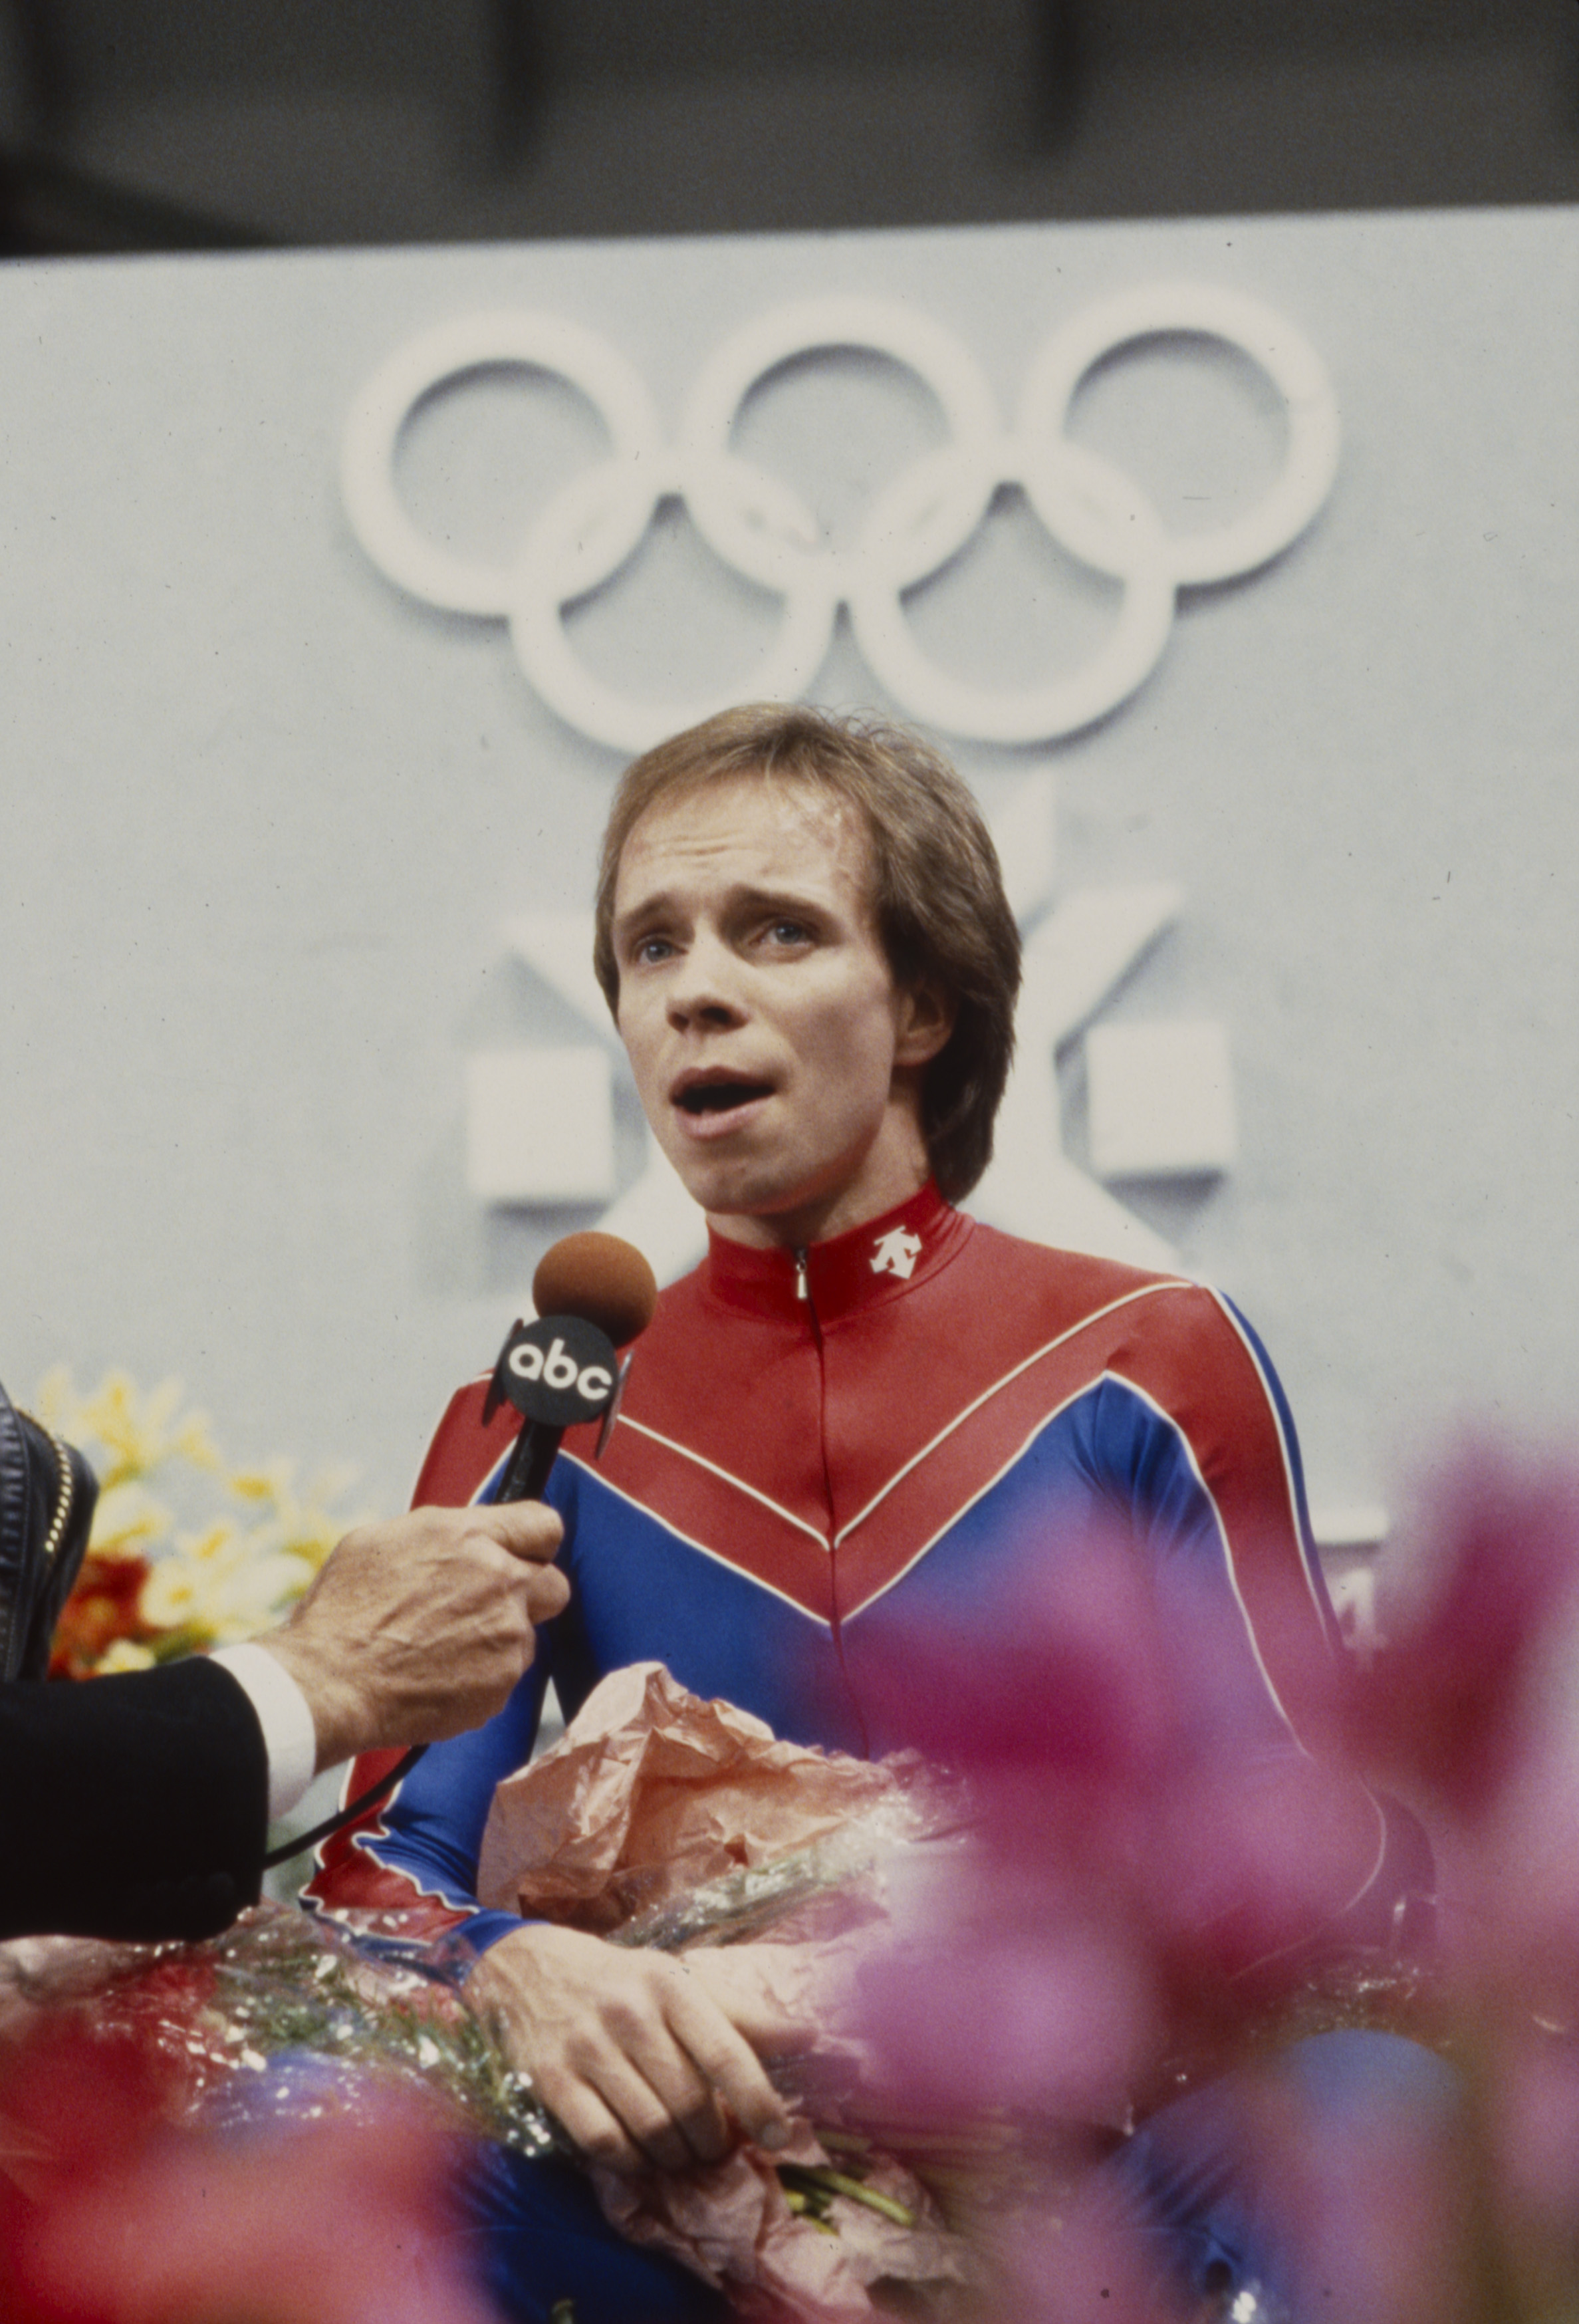 Scott Hamilton tras competir en la prueba masculina de patinaje artístico en los Juegos Olímpicos de Invierno de 1984 / XIV Juegos Olímpicos de Invierno el 1 de febrero de 1984 | Foto: Getty Images